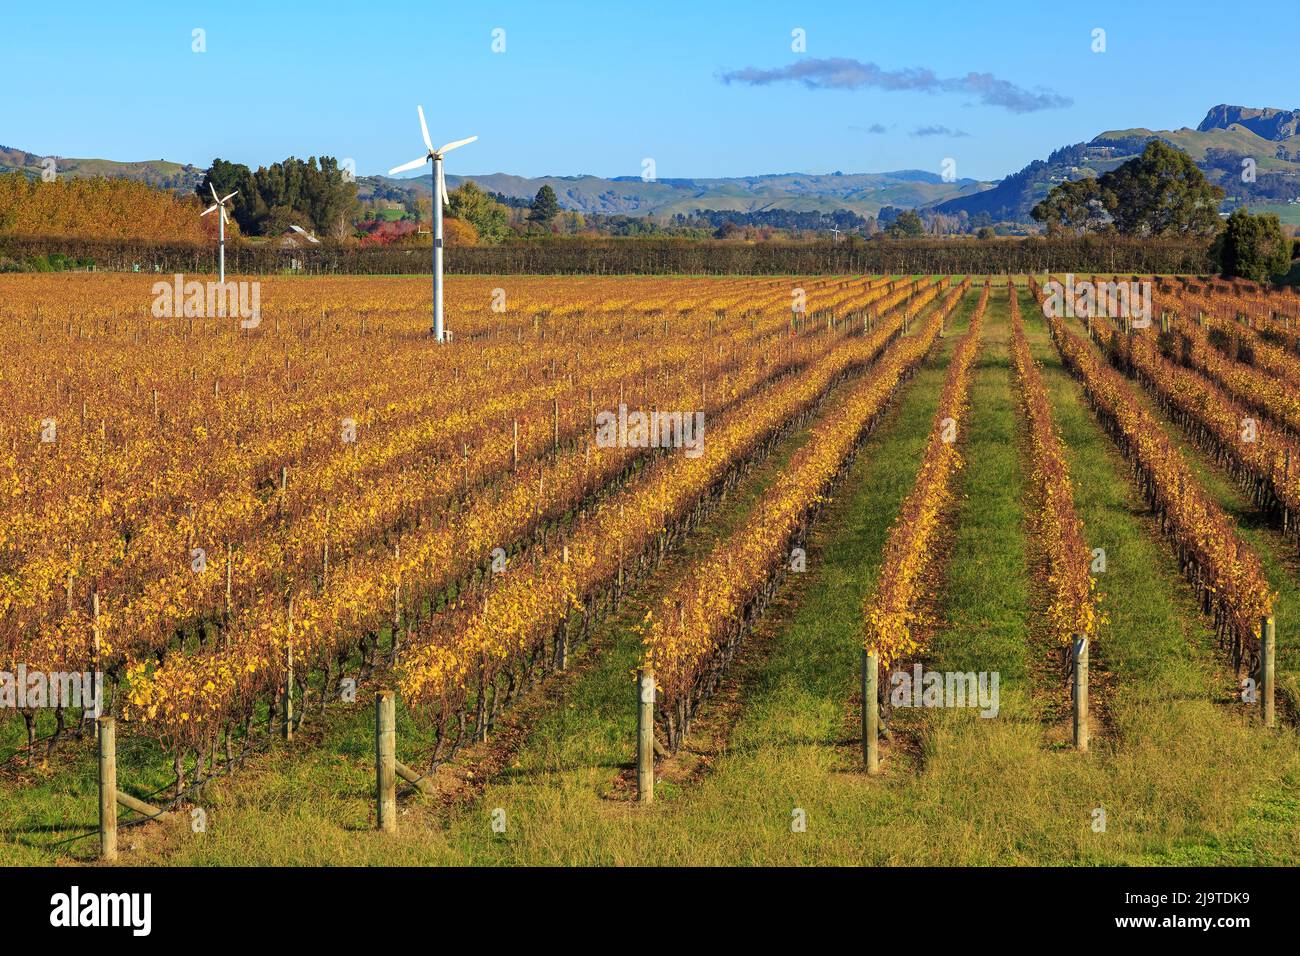 Des rangées de vignes sur un vignoble en automne, avec des machines à vent pour protéger les raisins du gel. Hawke's Bay, Nouvelle-Zélande Banque D'Images